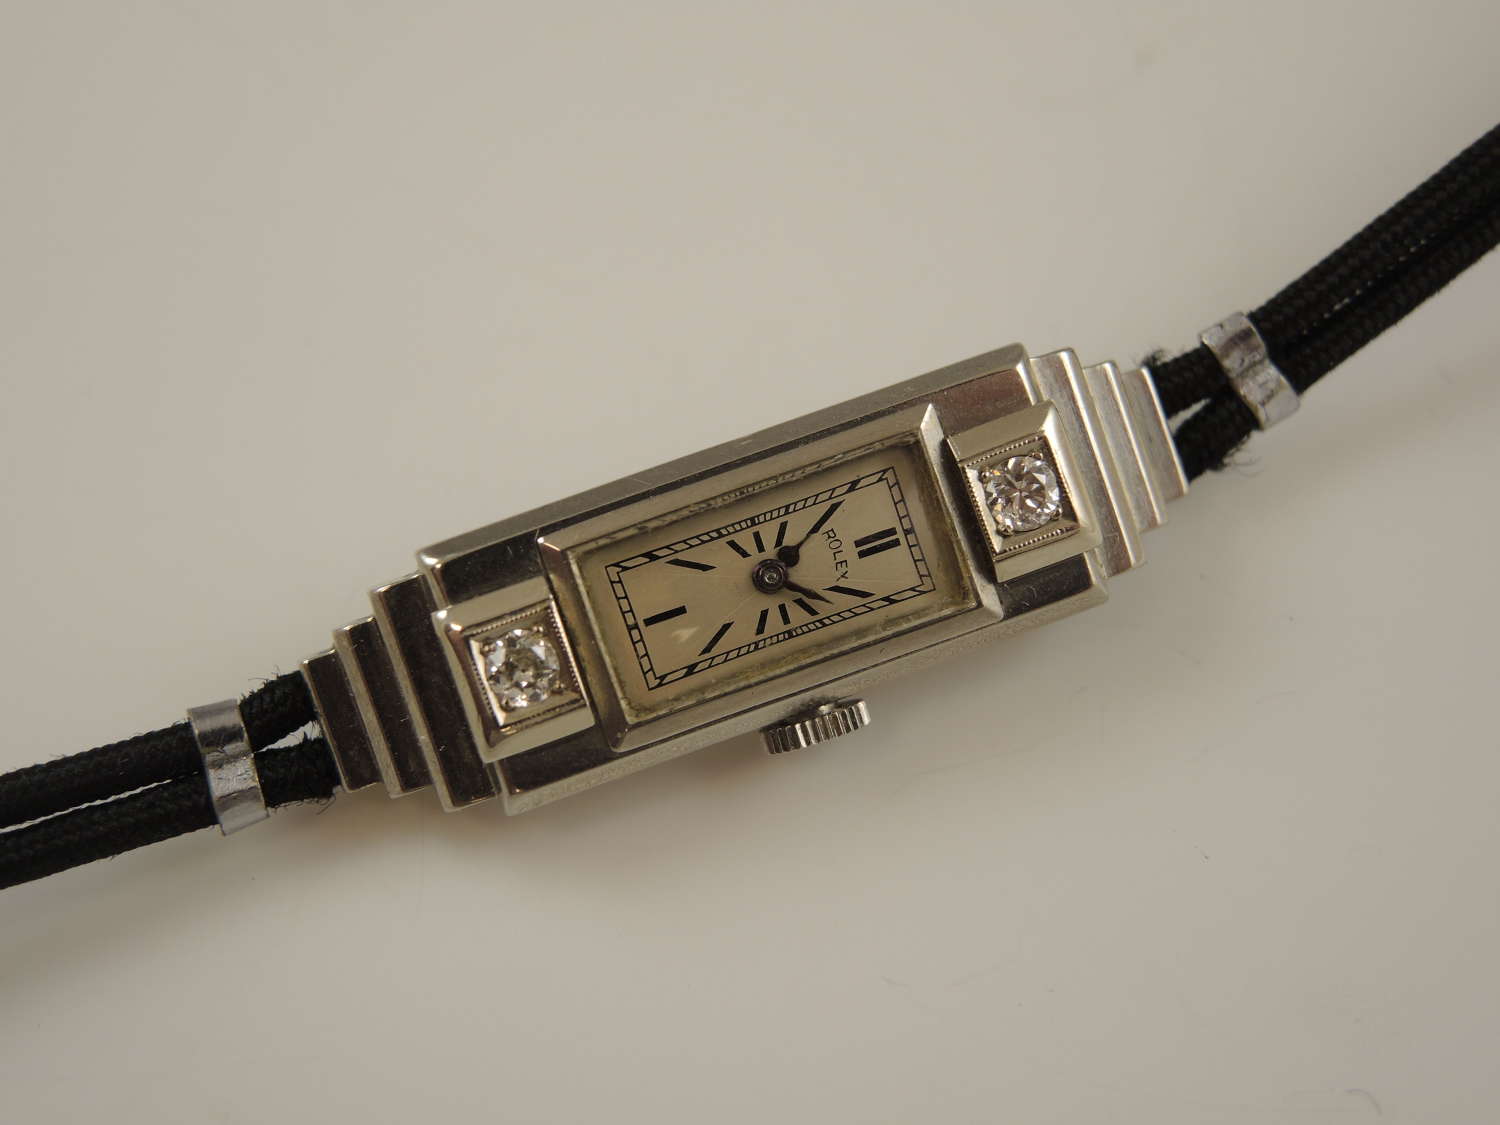 Rare Genuine ladies 9K and diamond ROLEX PRINCESS watch c1920